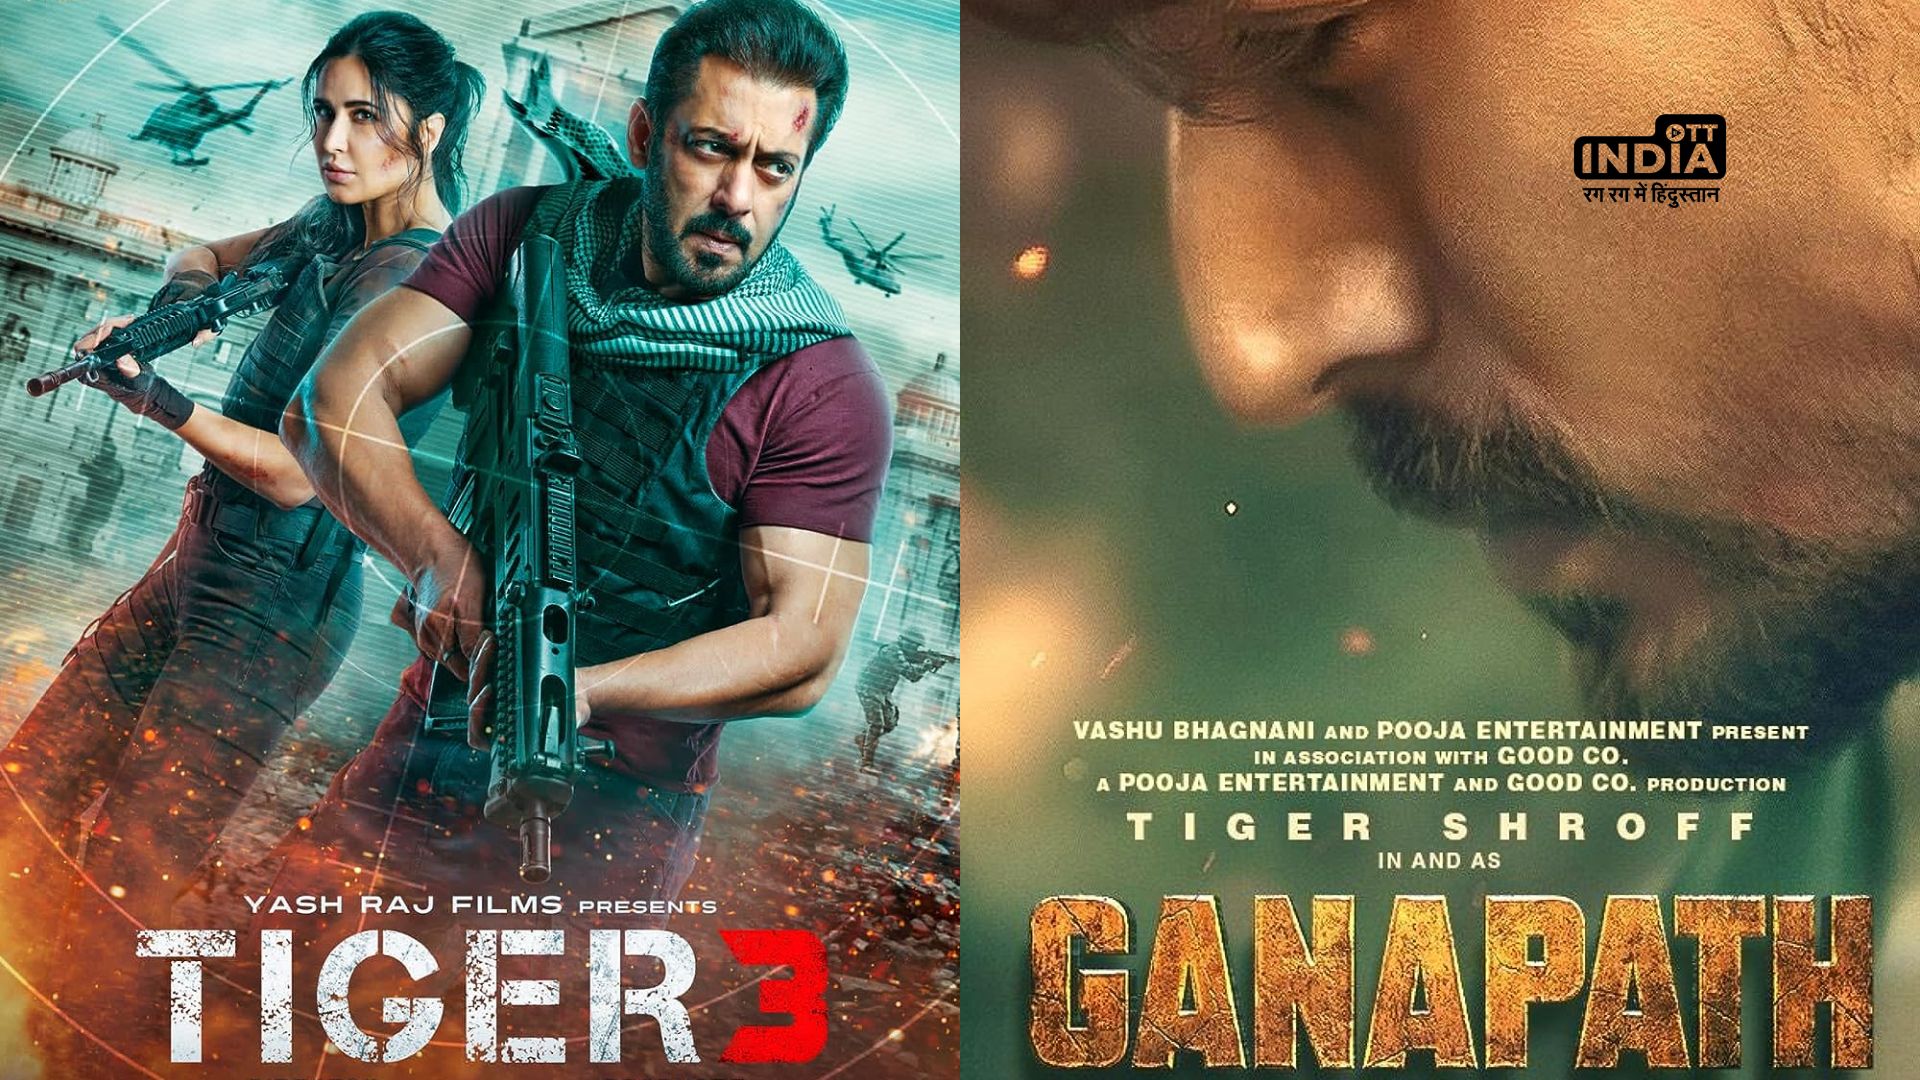 Tiger 3 vs Ganapath Part 1: Salman Khan के सामने Tiger Shroff ने टेके घुटने, सिर्फ 1 फ़िल्म का teaser होने वाला हैं रिलीज़…